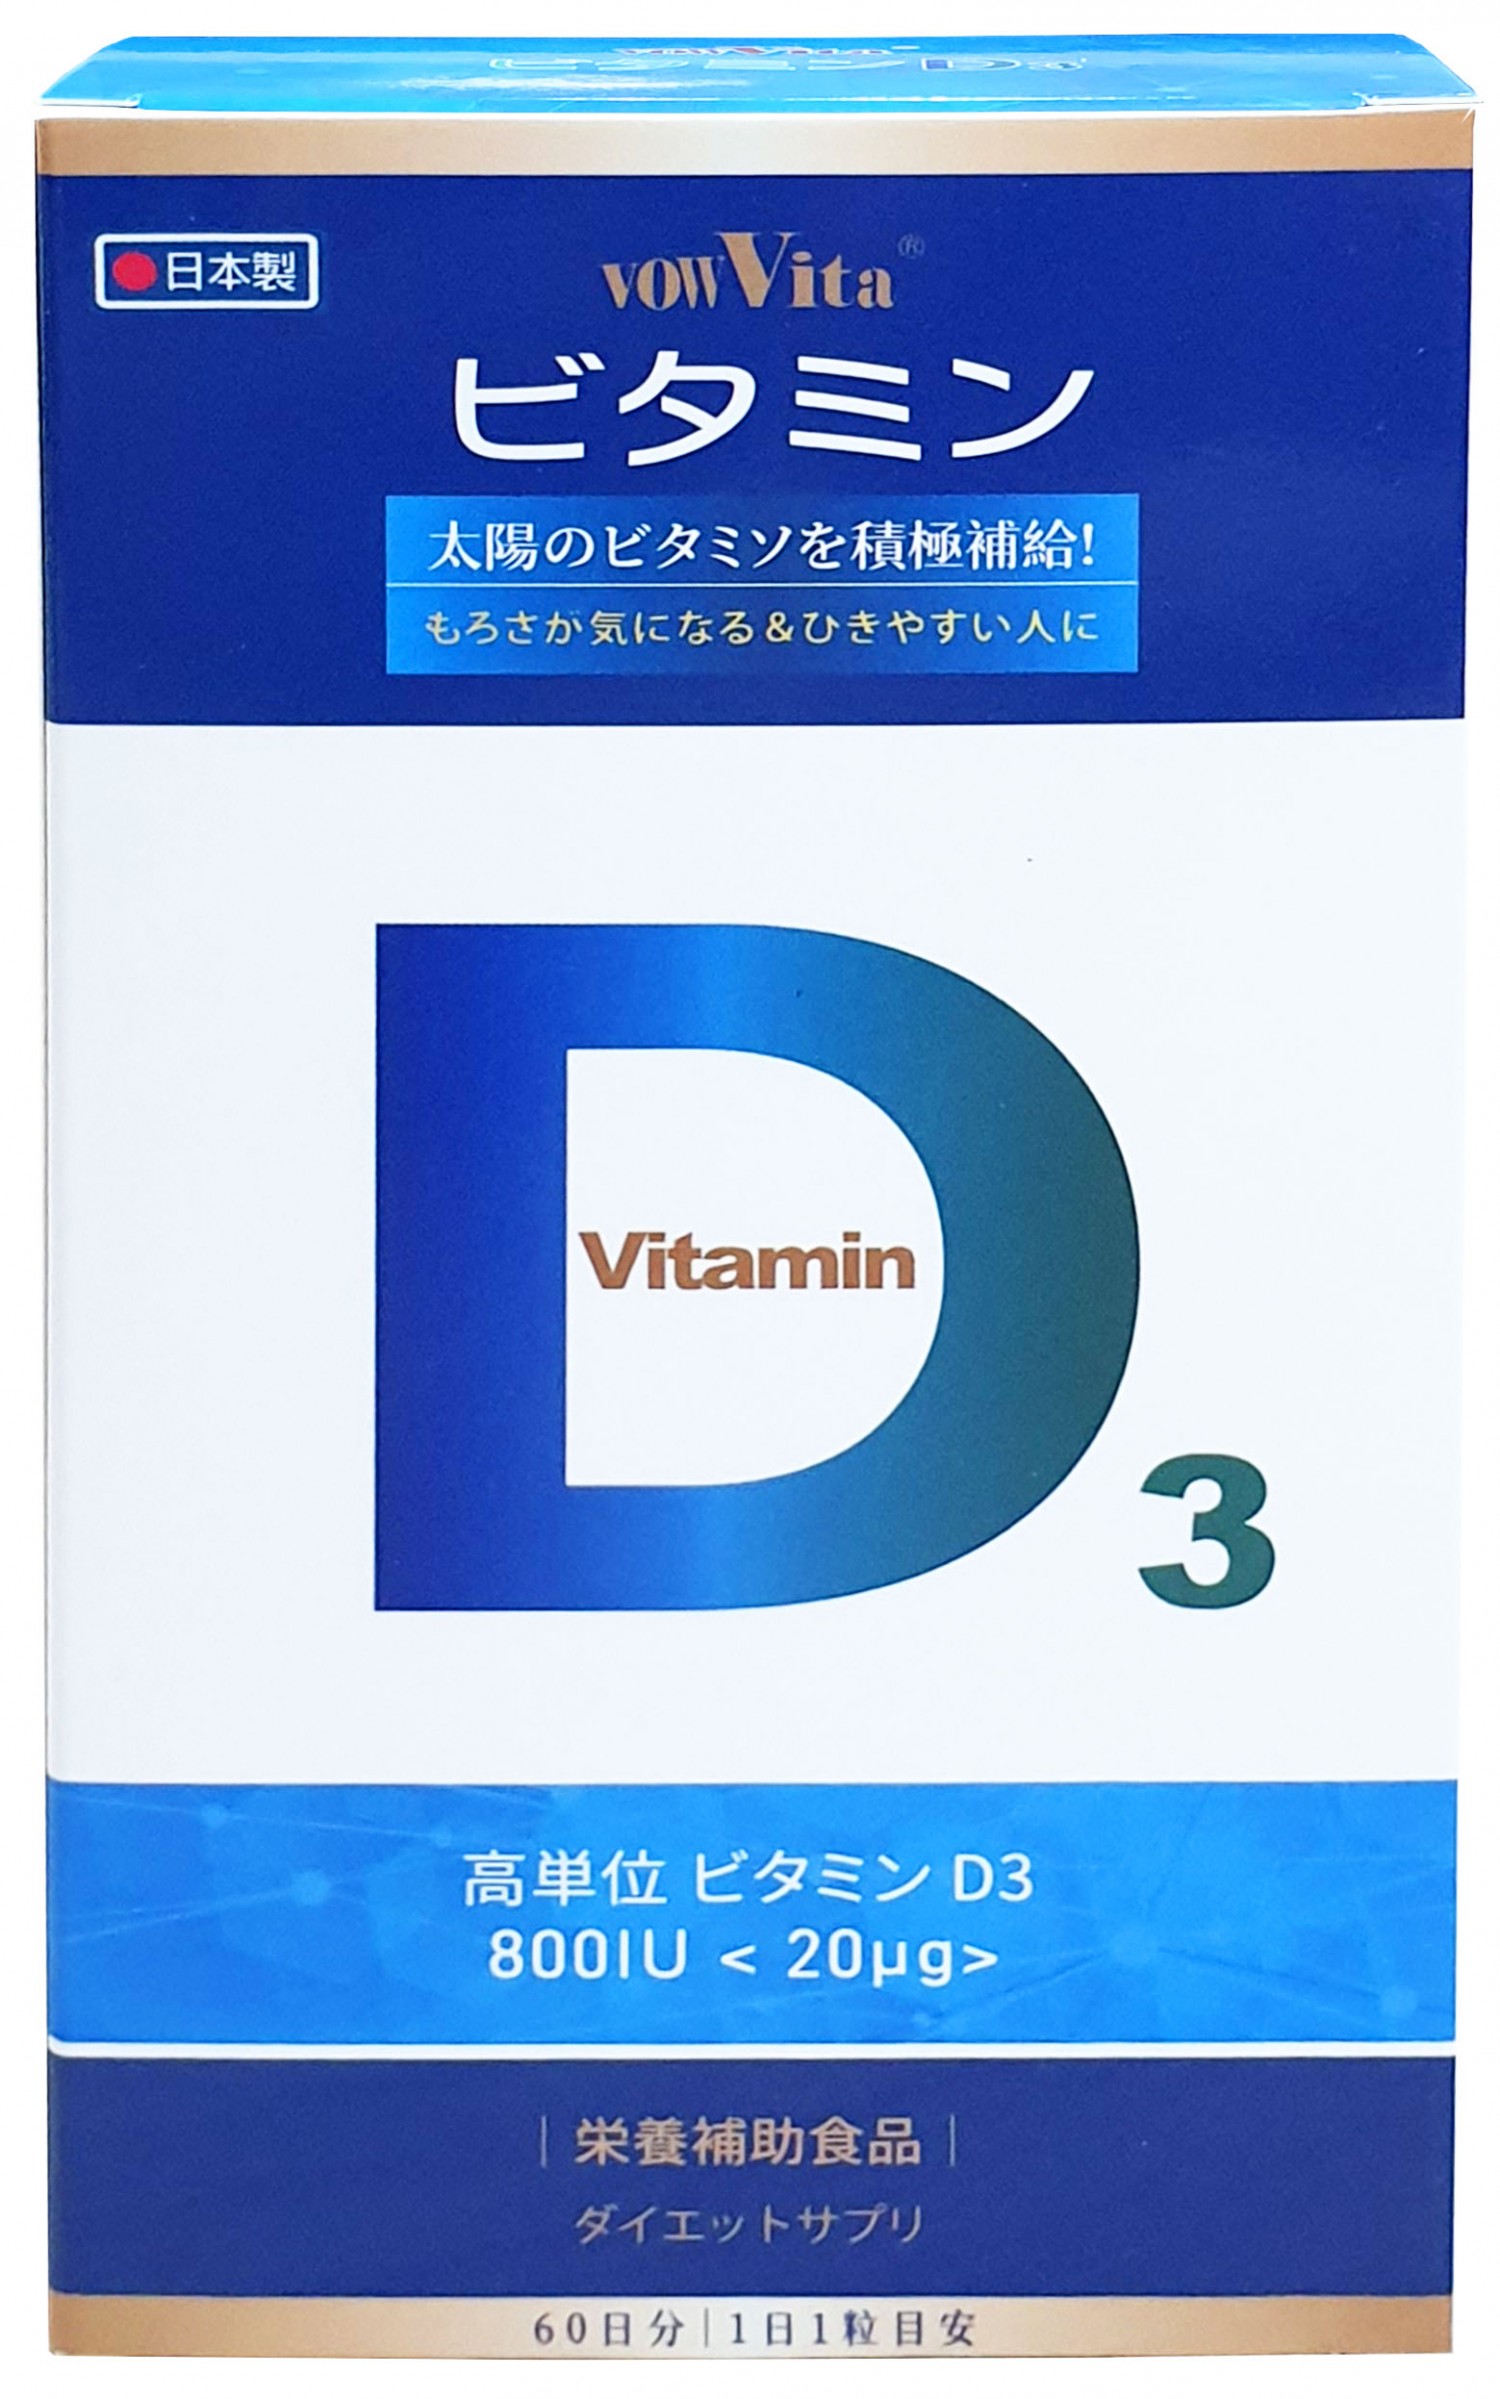 日本進口  維生素 D3 800IU軟膠曩食品 (60粒/盒裝)